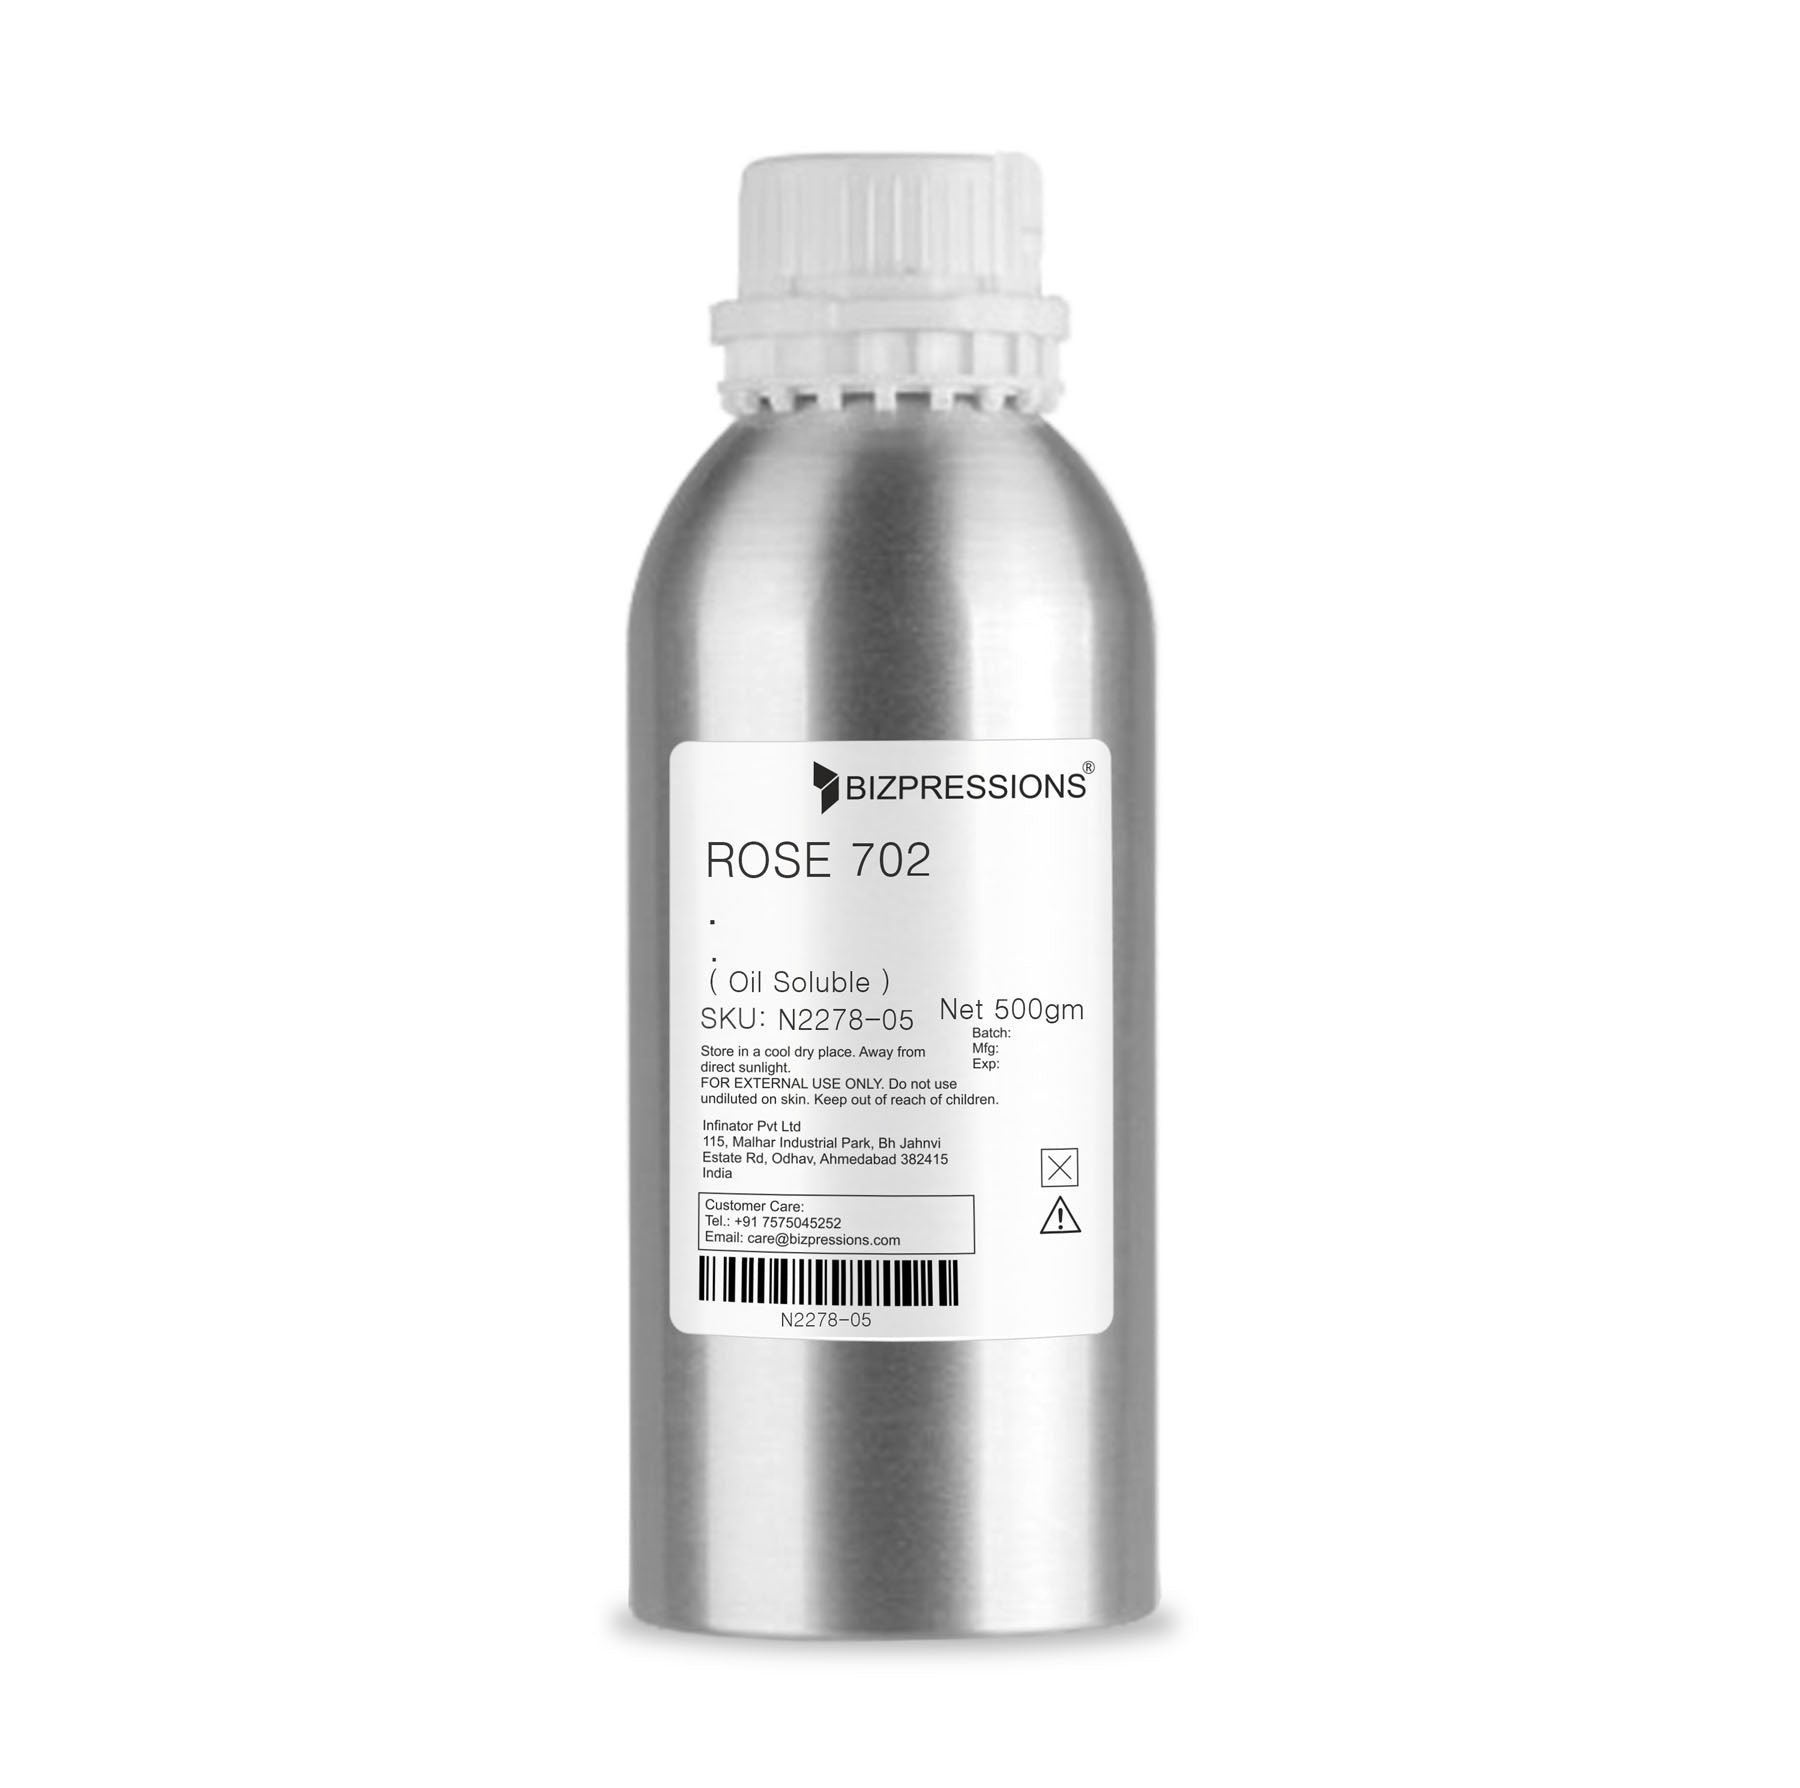 ROSE 702 - Fragrance ( Oil Soluble ) - 500 gm